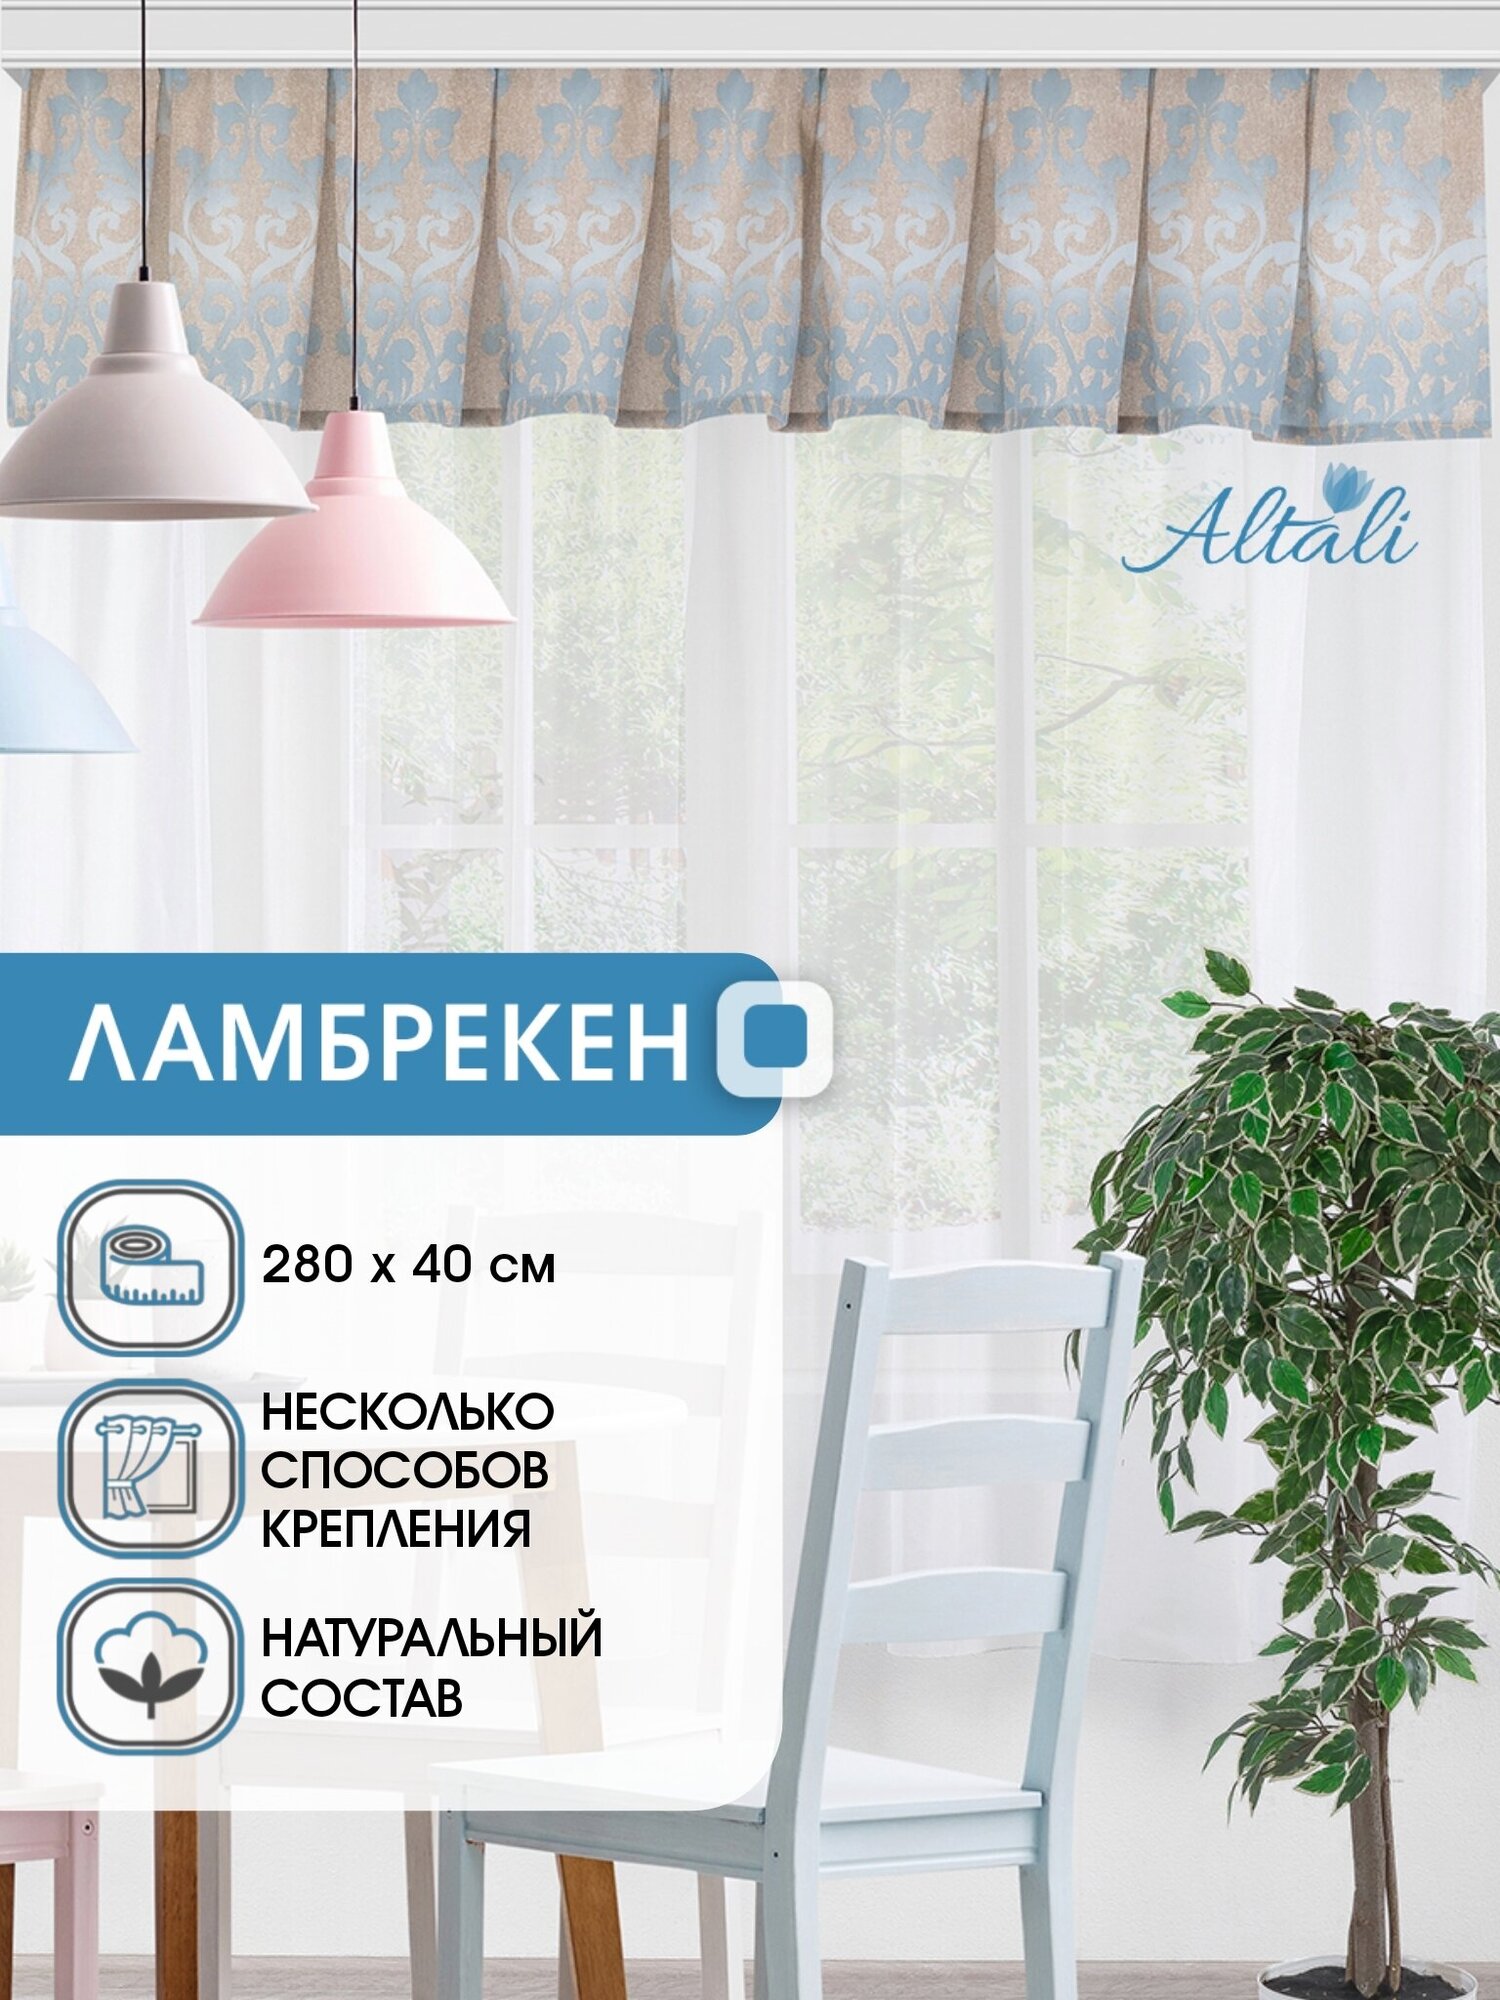 Ламбрекен для штор Altali / 1 шт / хлопок 70% / для спальни гостиной кухни дачи